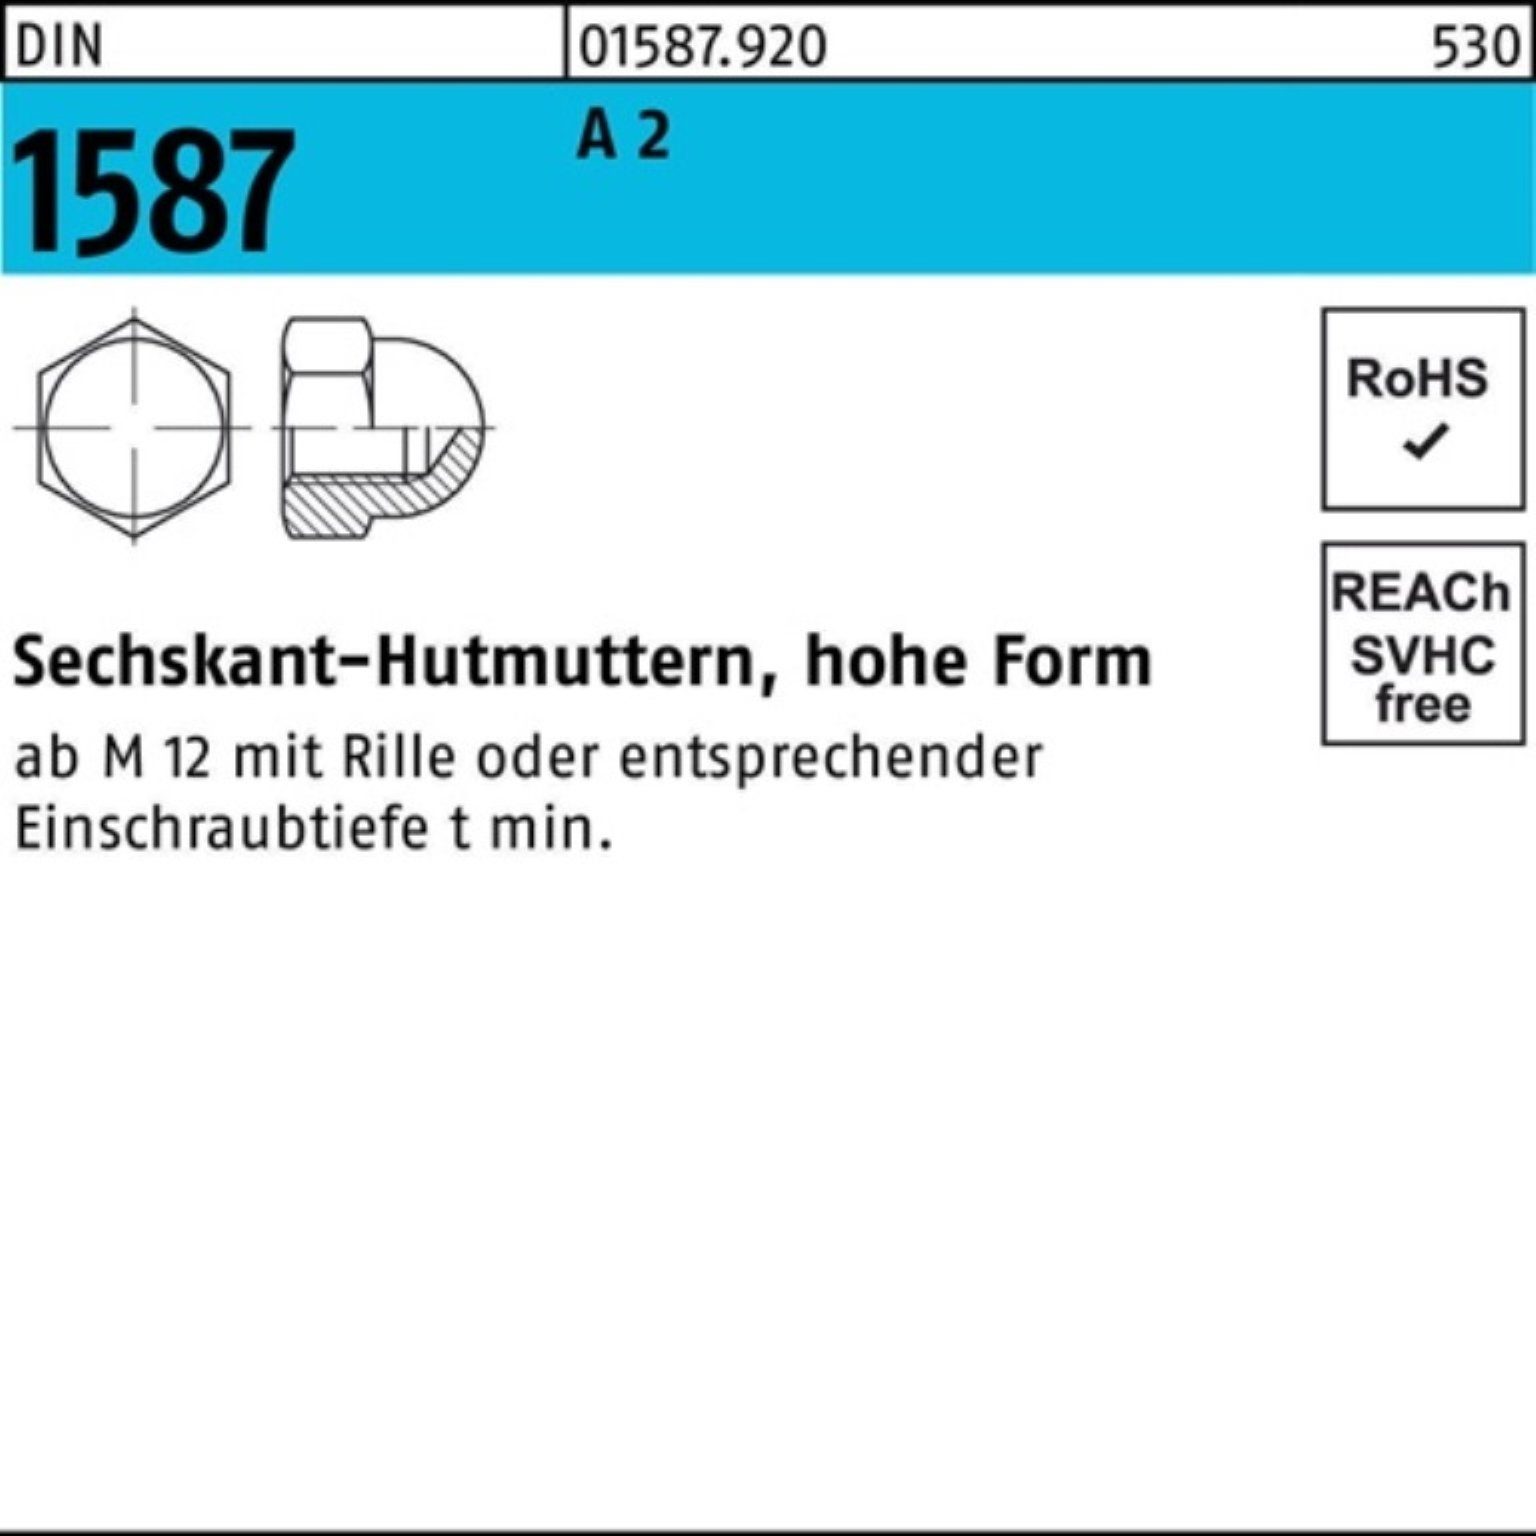 S Stück Hutmutter Pack M24 Sechskanthutmutter 1587 1587 1 DIN Reyher DIN 2 2 100er A A